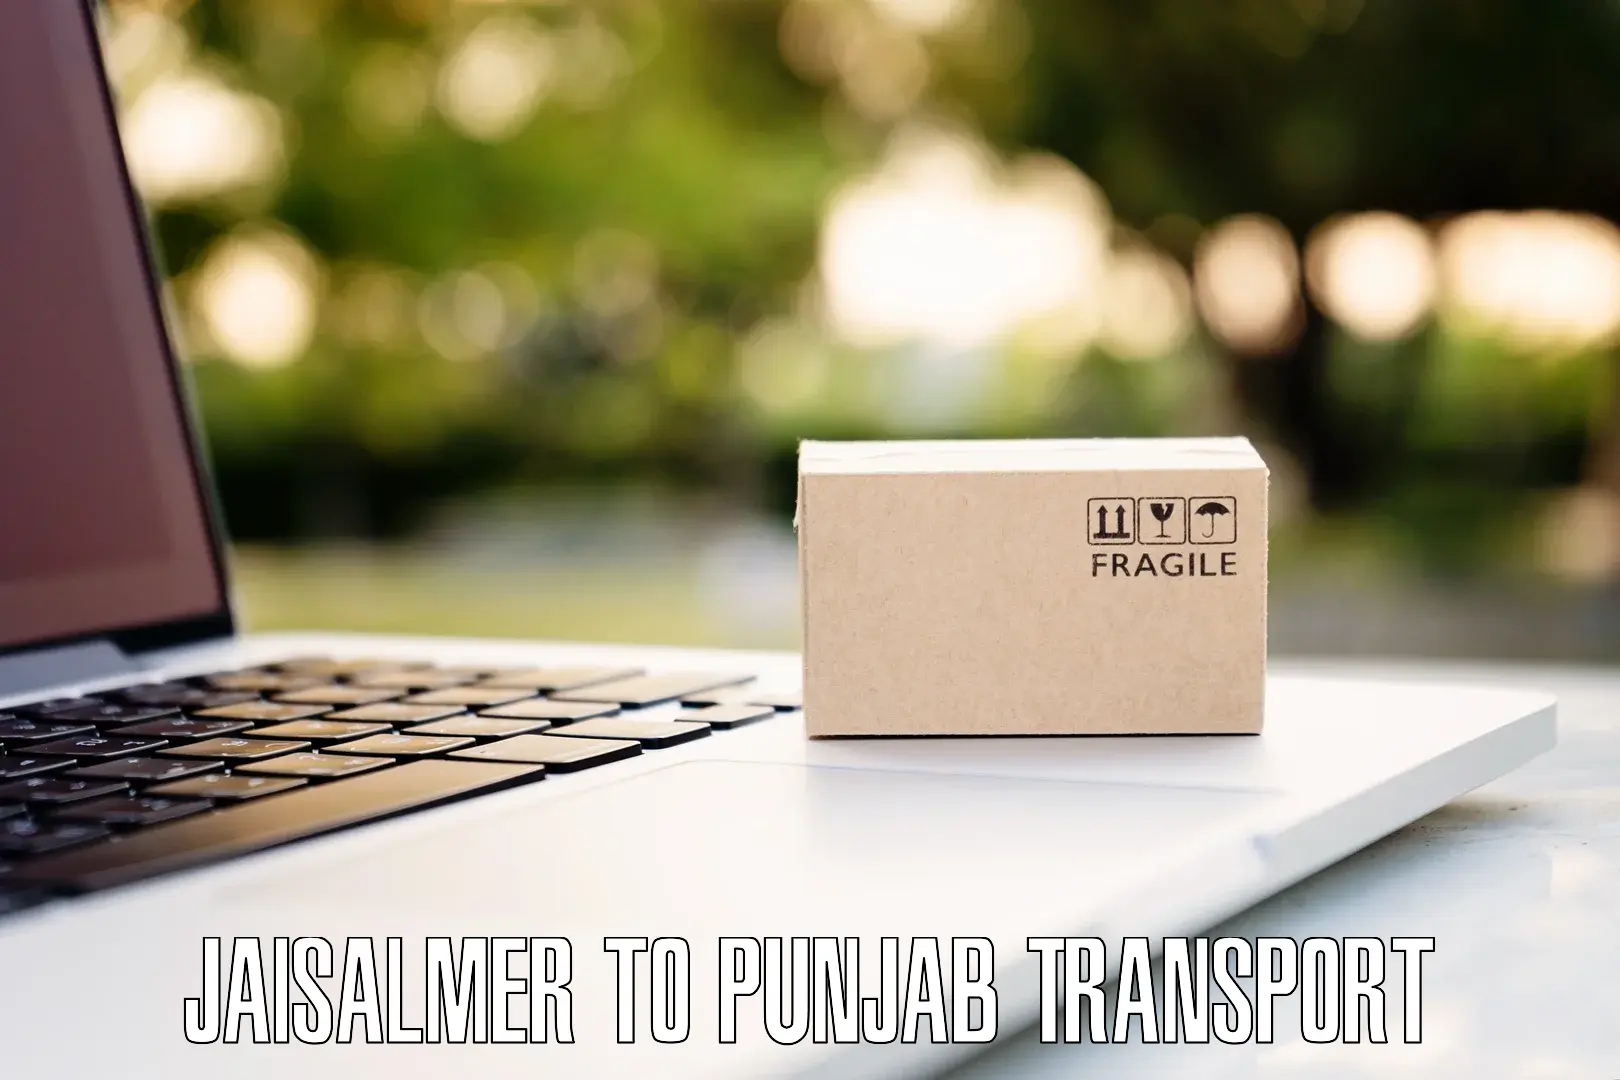 Two wheeler transport services Jaisalmer to Punjab